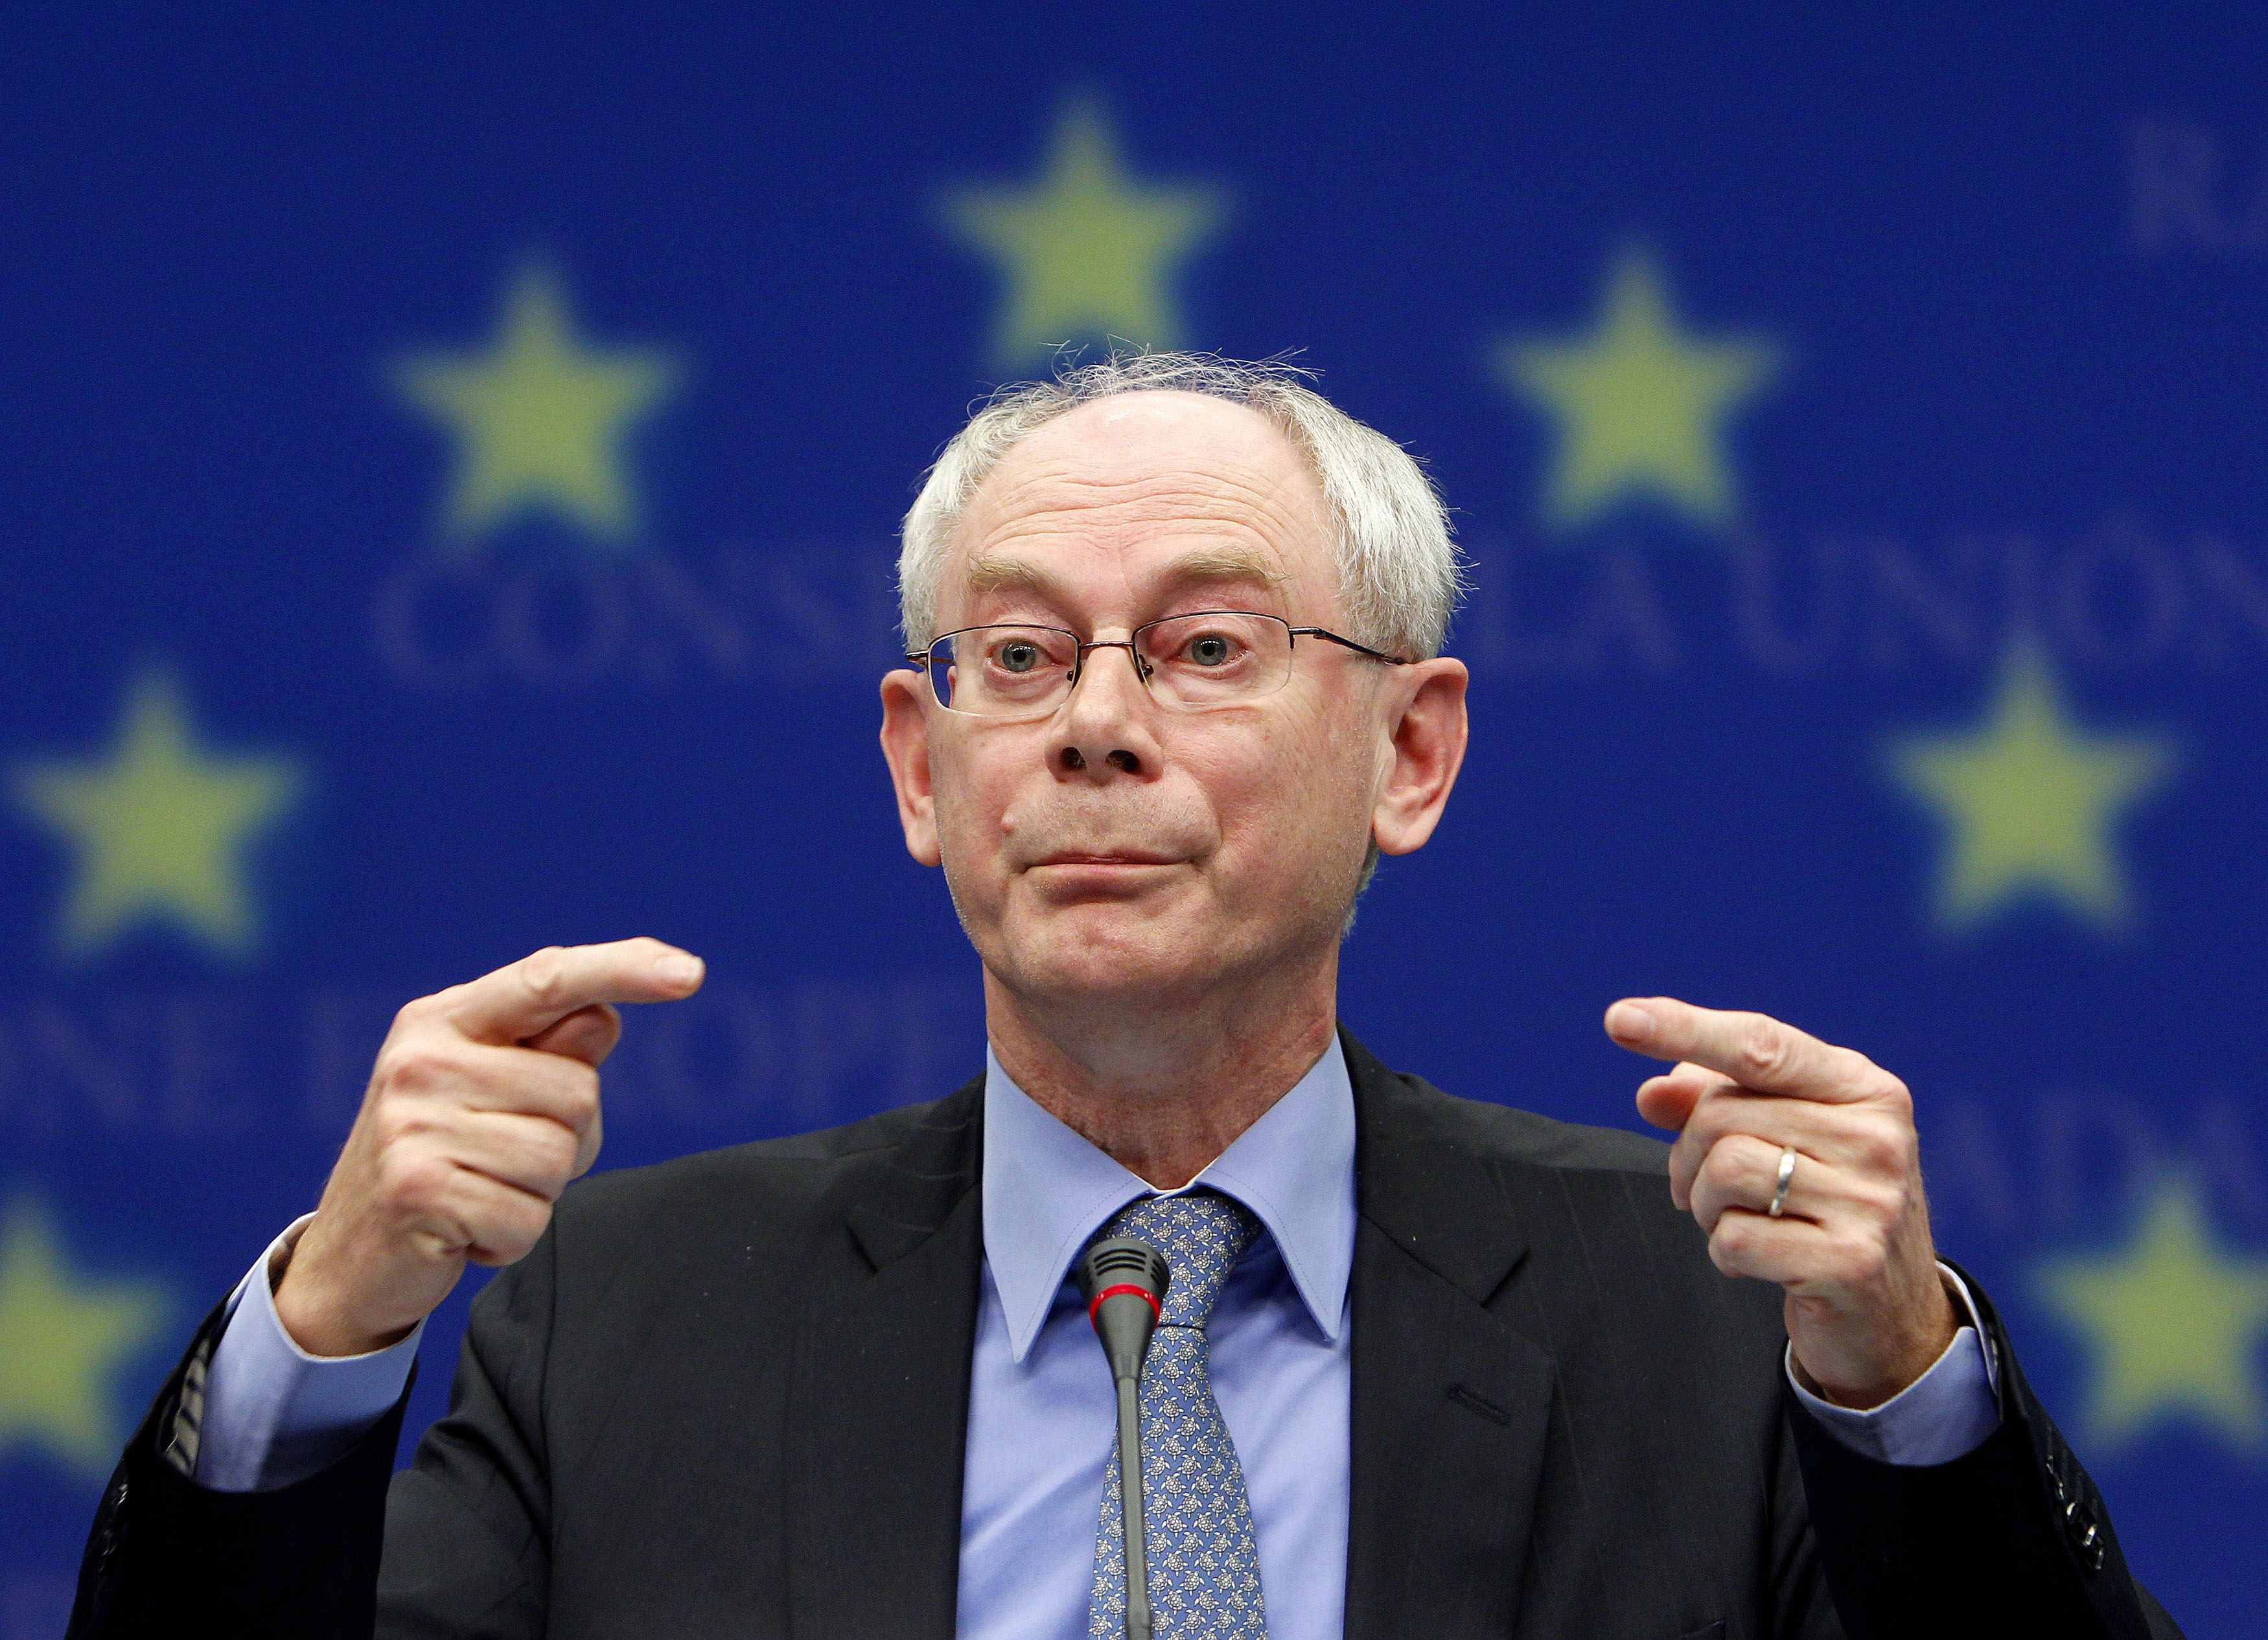 <b>Βρυξέλλες </b>Αυστηρές κυρώσεις για τους παραβάτες της Ευρωζώνης θα ζητήσει αύριο η Γερμανία